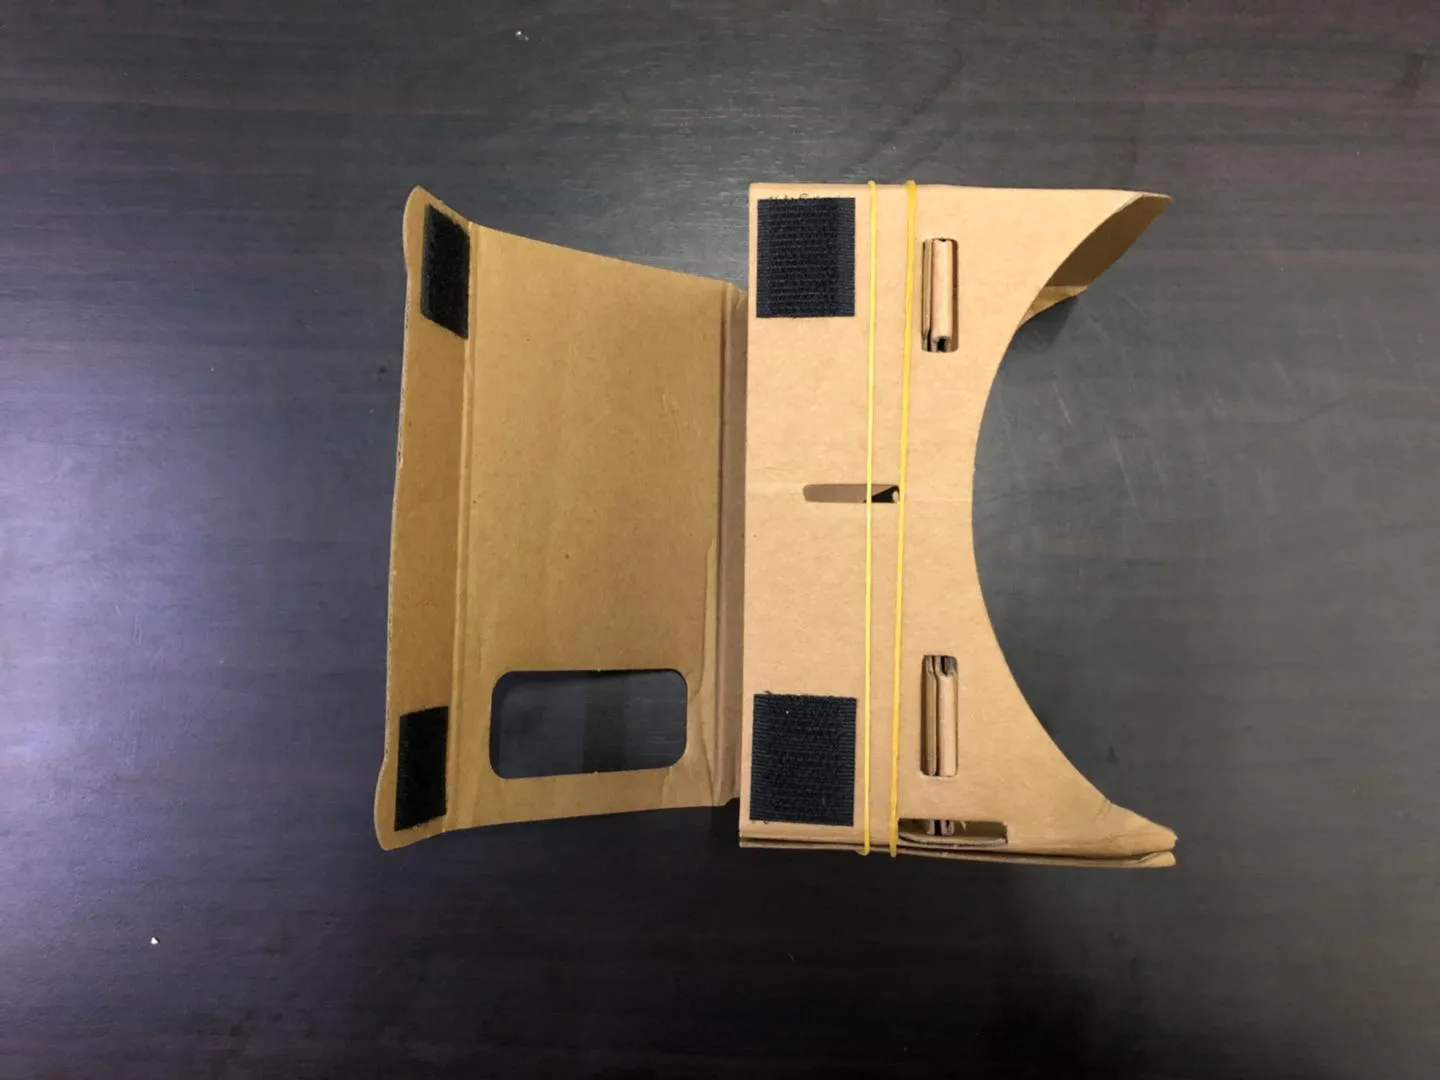 Modelli 3D gratuiti Occhiali 3D Occhiali VR Fai da te Google Cardboard Telefono cellulare Realtà virtuale Cartone non ufficiale VR Toolkit Occhiali 3D CCA1785 B-XY